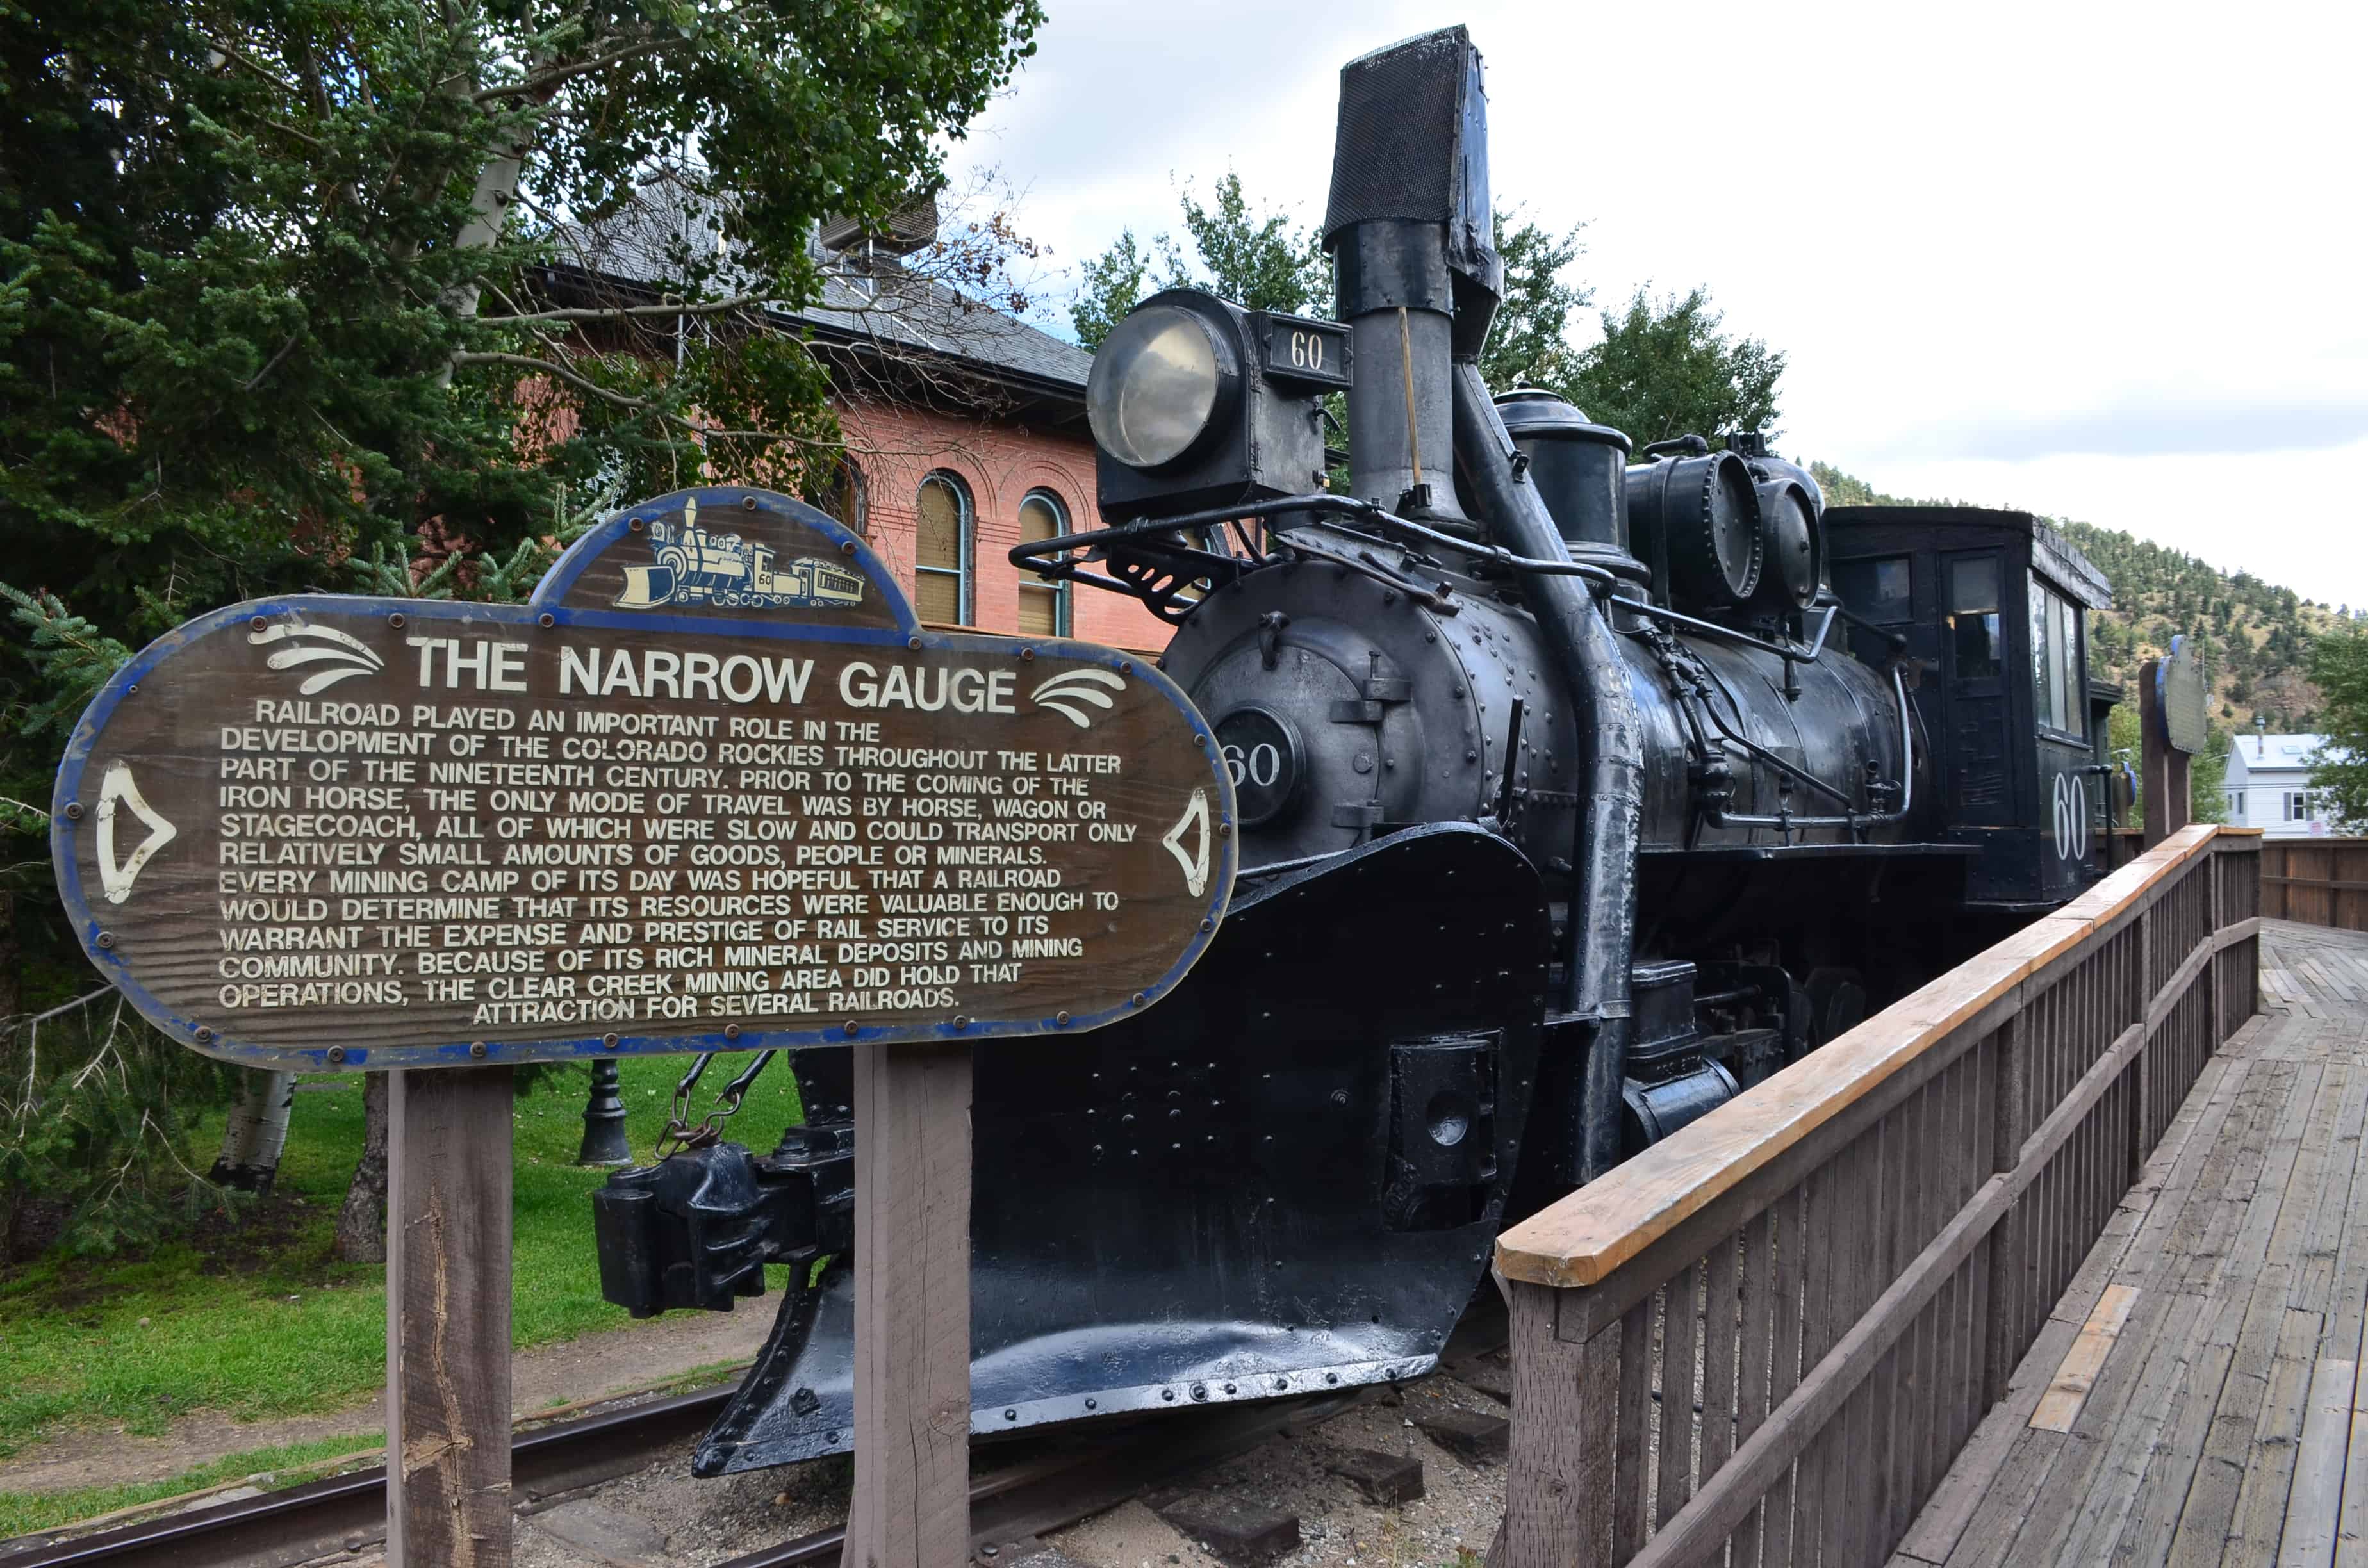 Engine No. 60 of the Narrow Gauge Railway in Idaho Springs, Colorado